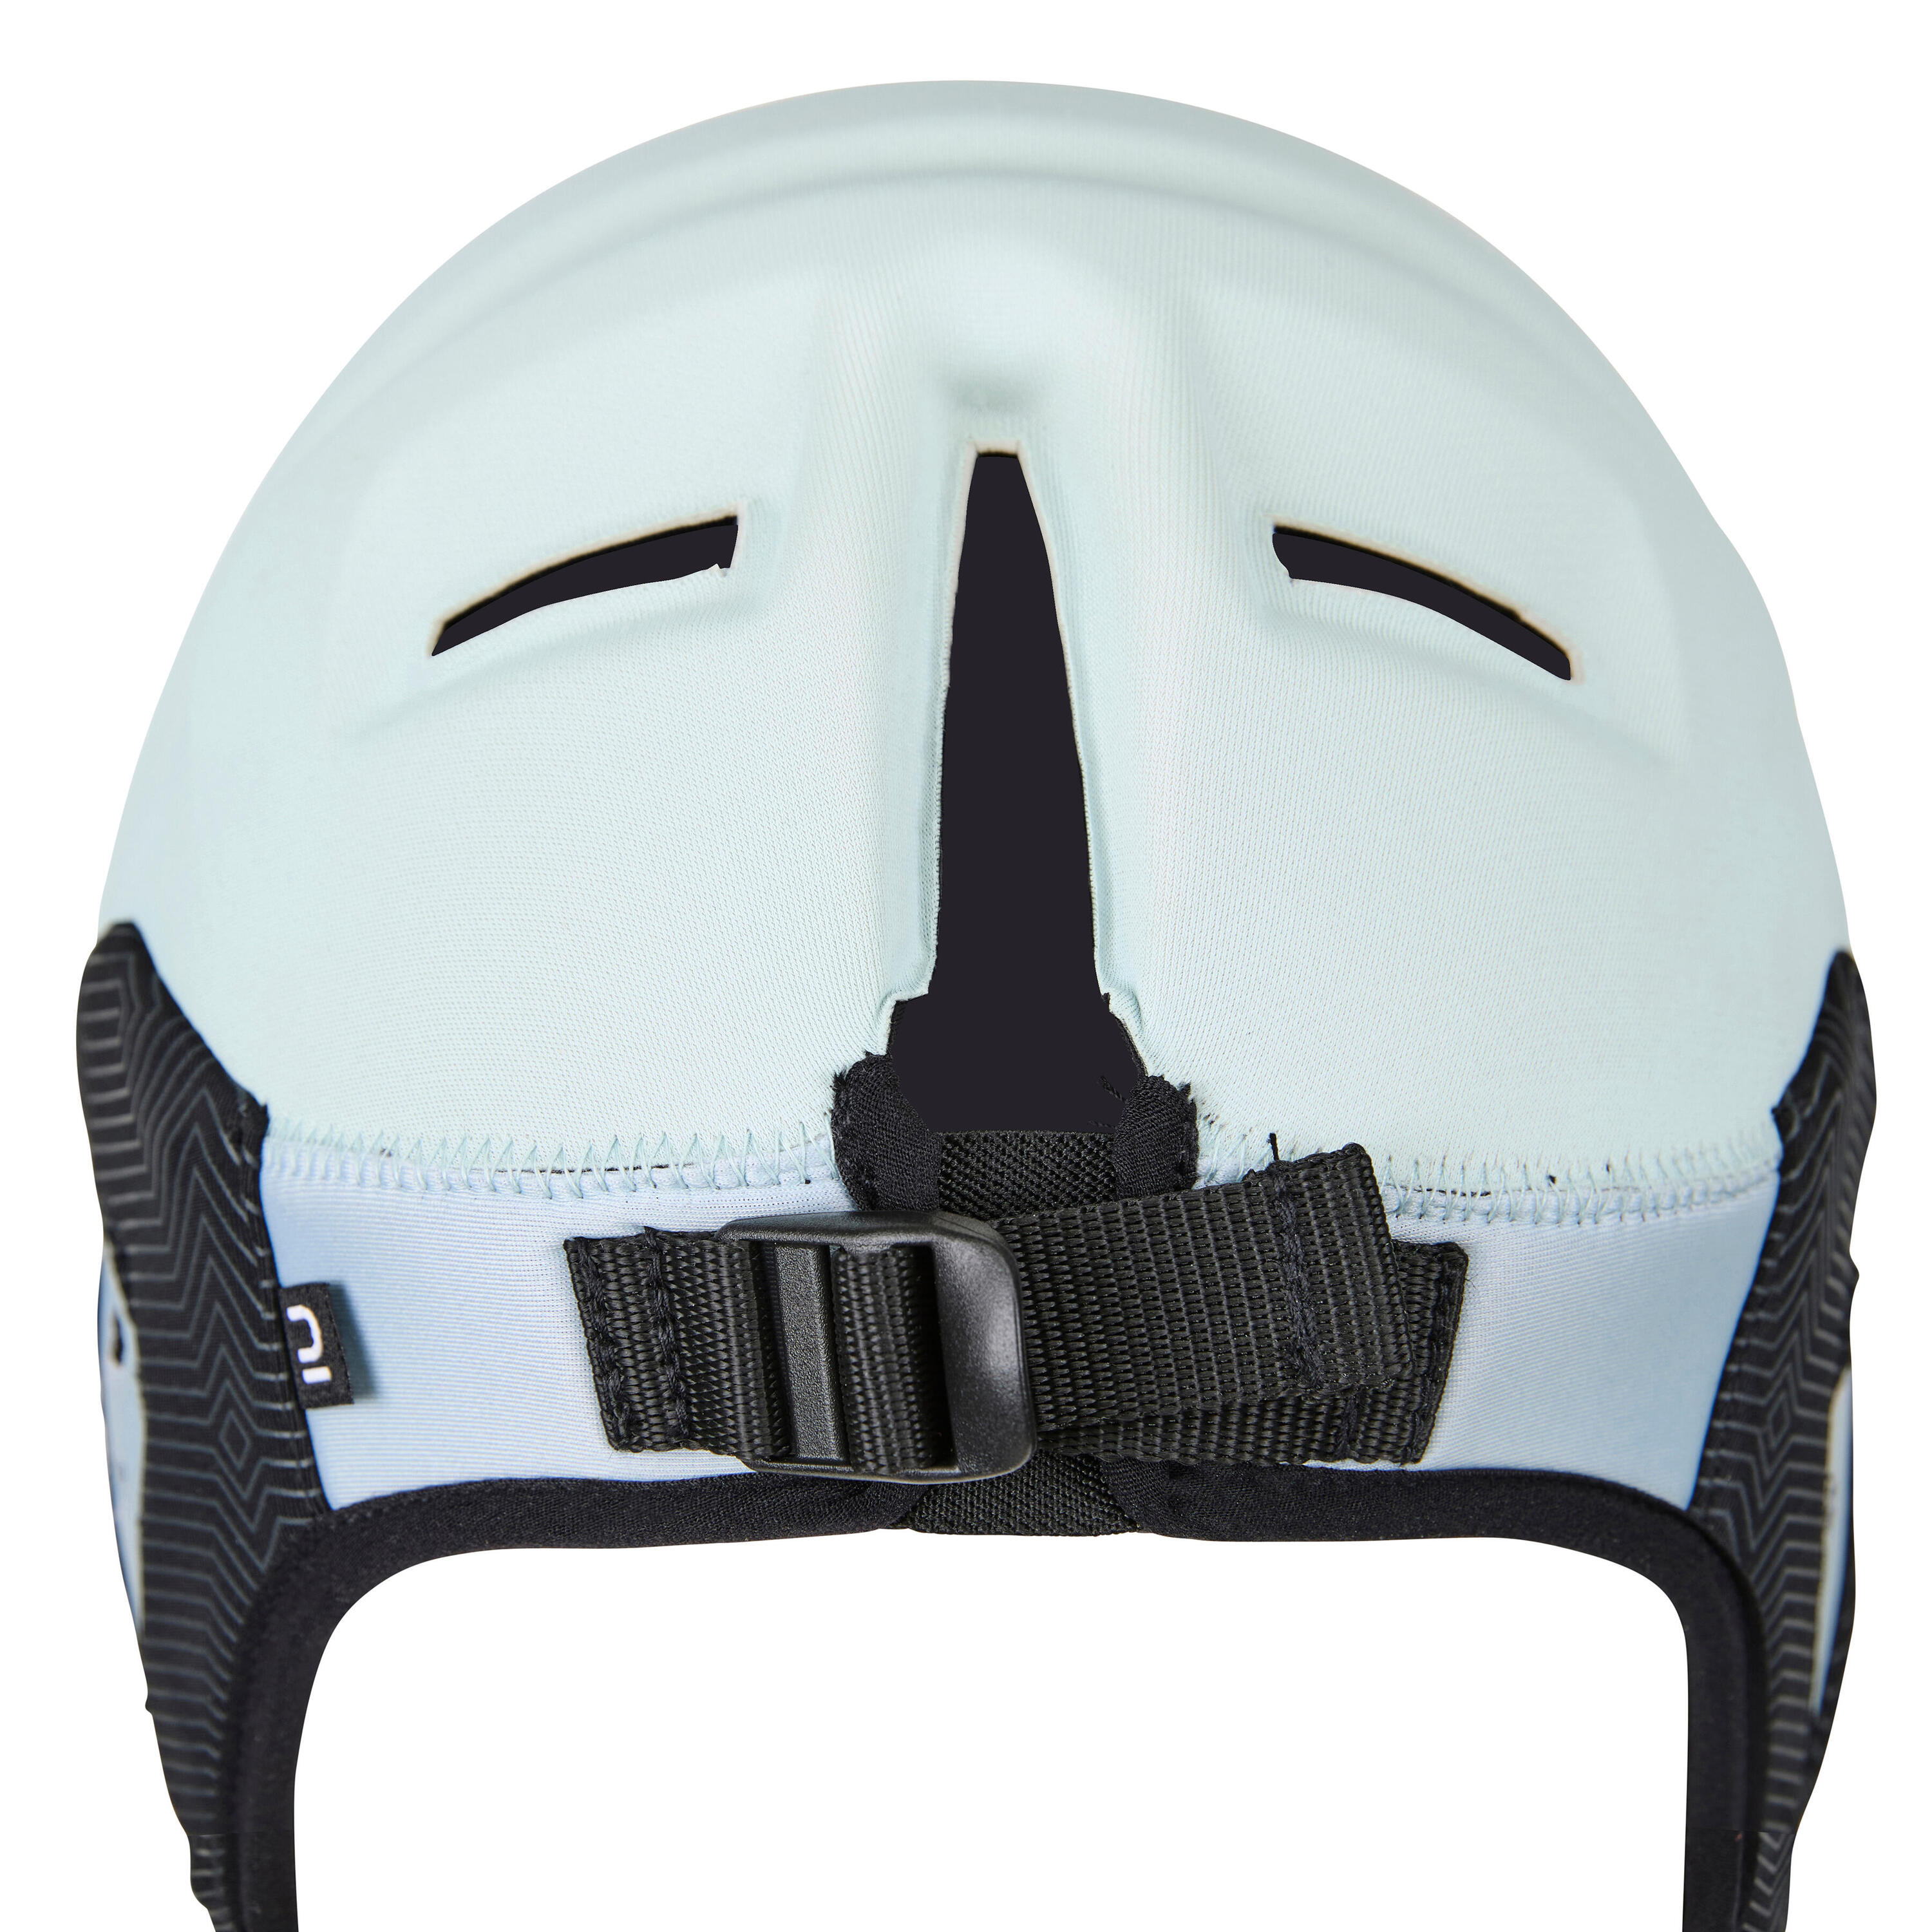 Helmet for surfing. Sky blue 4/7